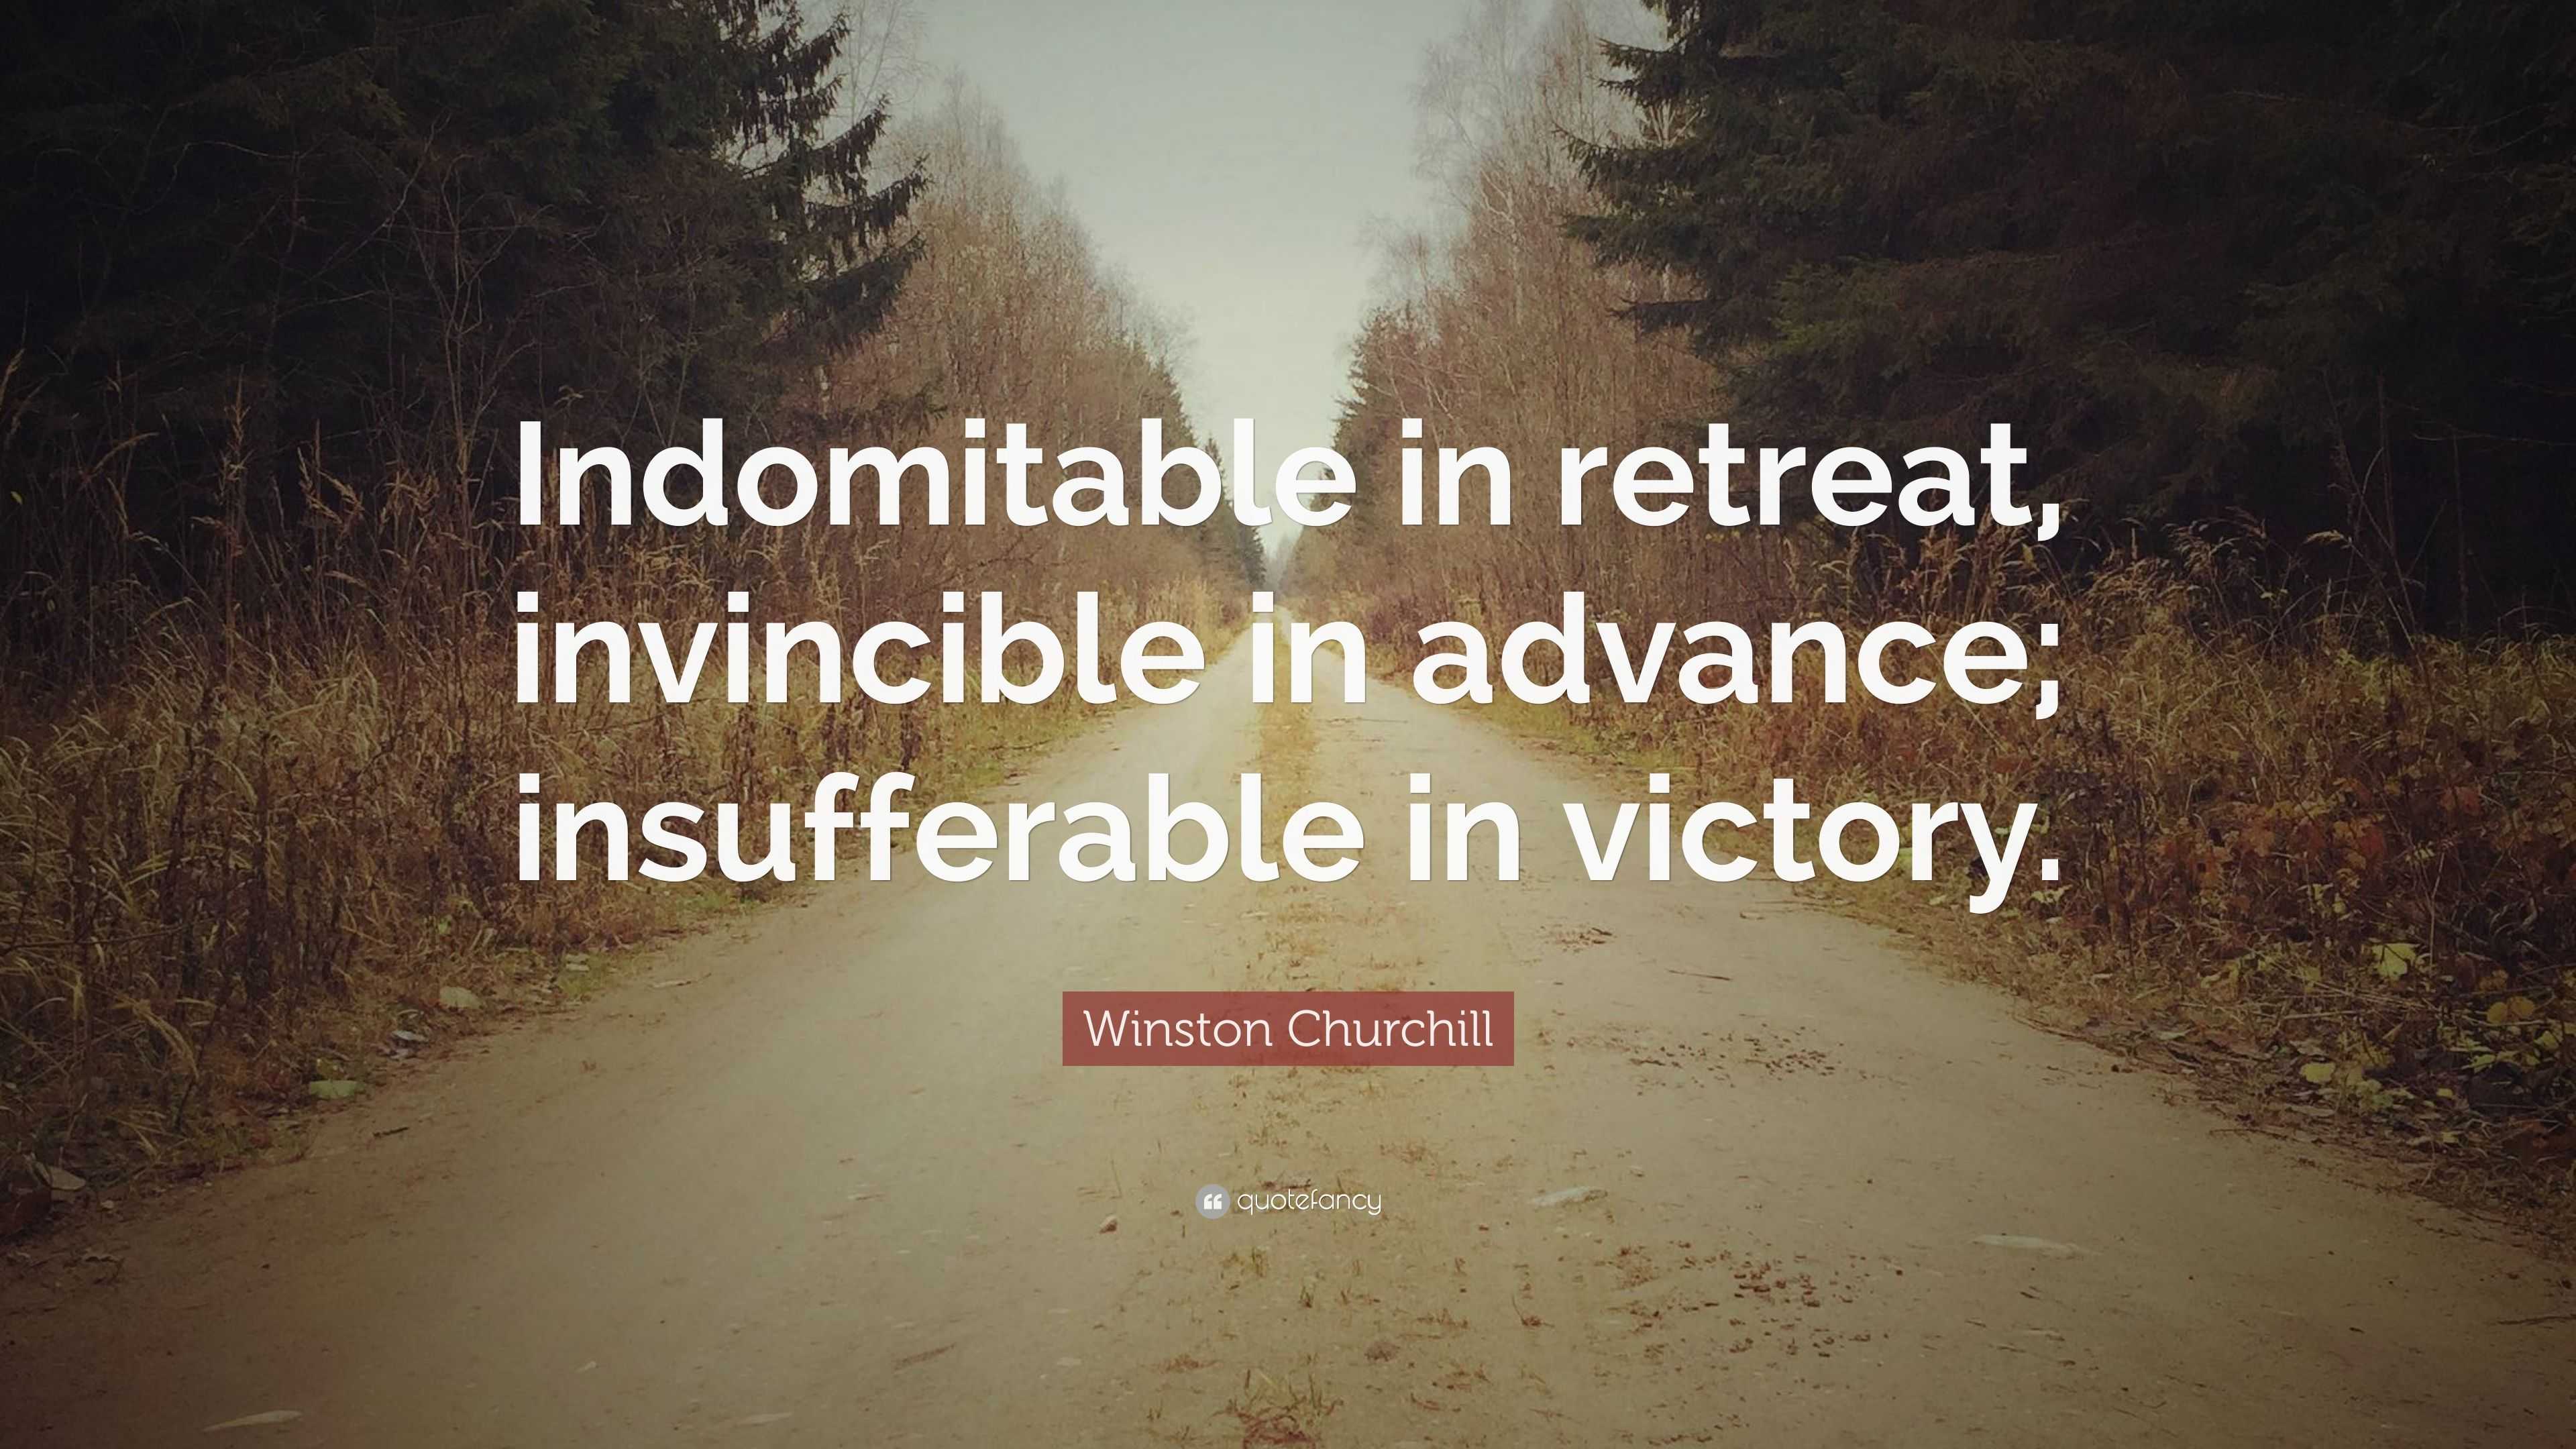 Winston Churchill Quote: “Indomitable in retreat, invincible in advance ...